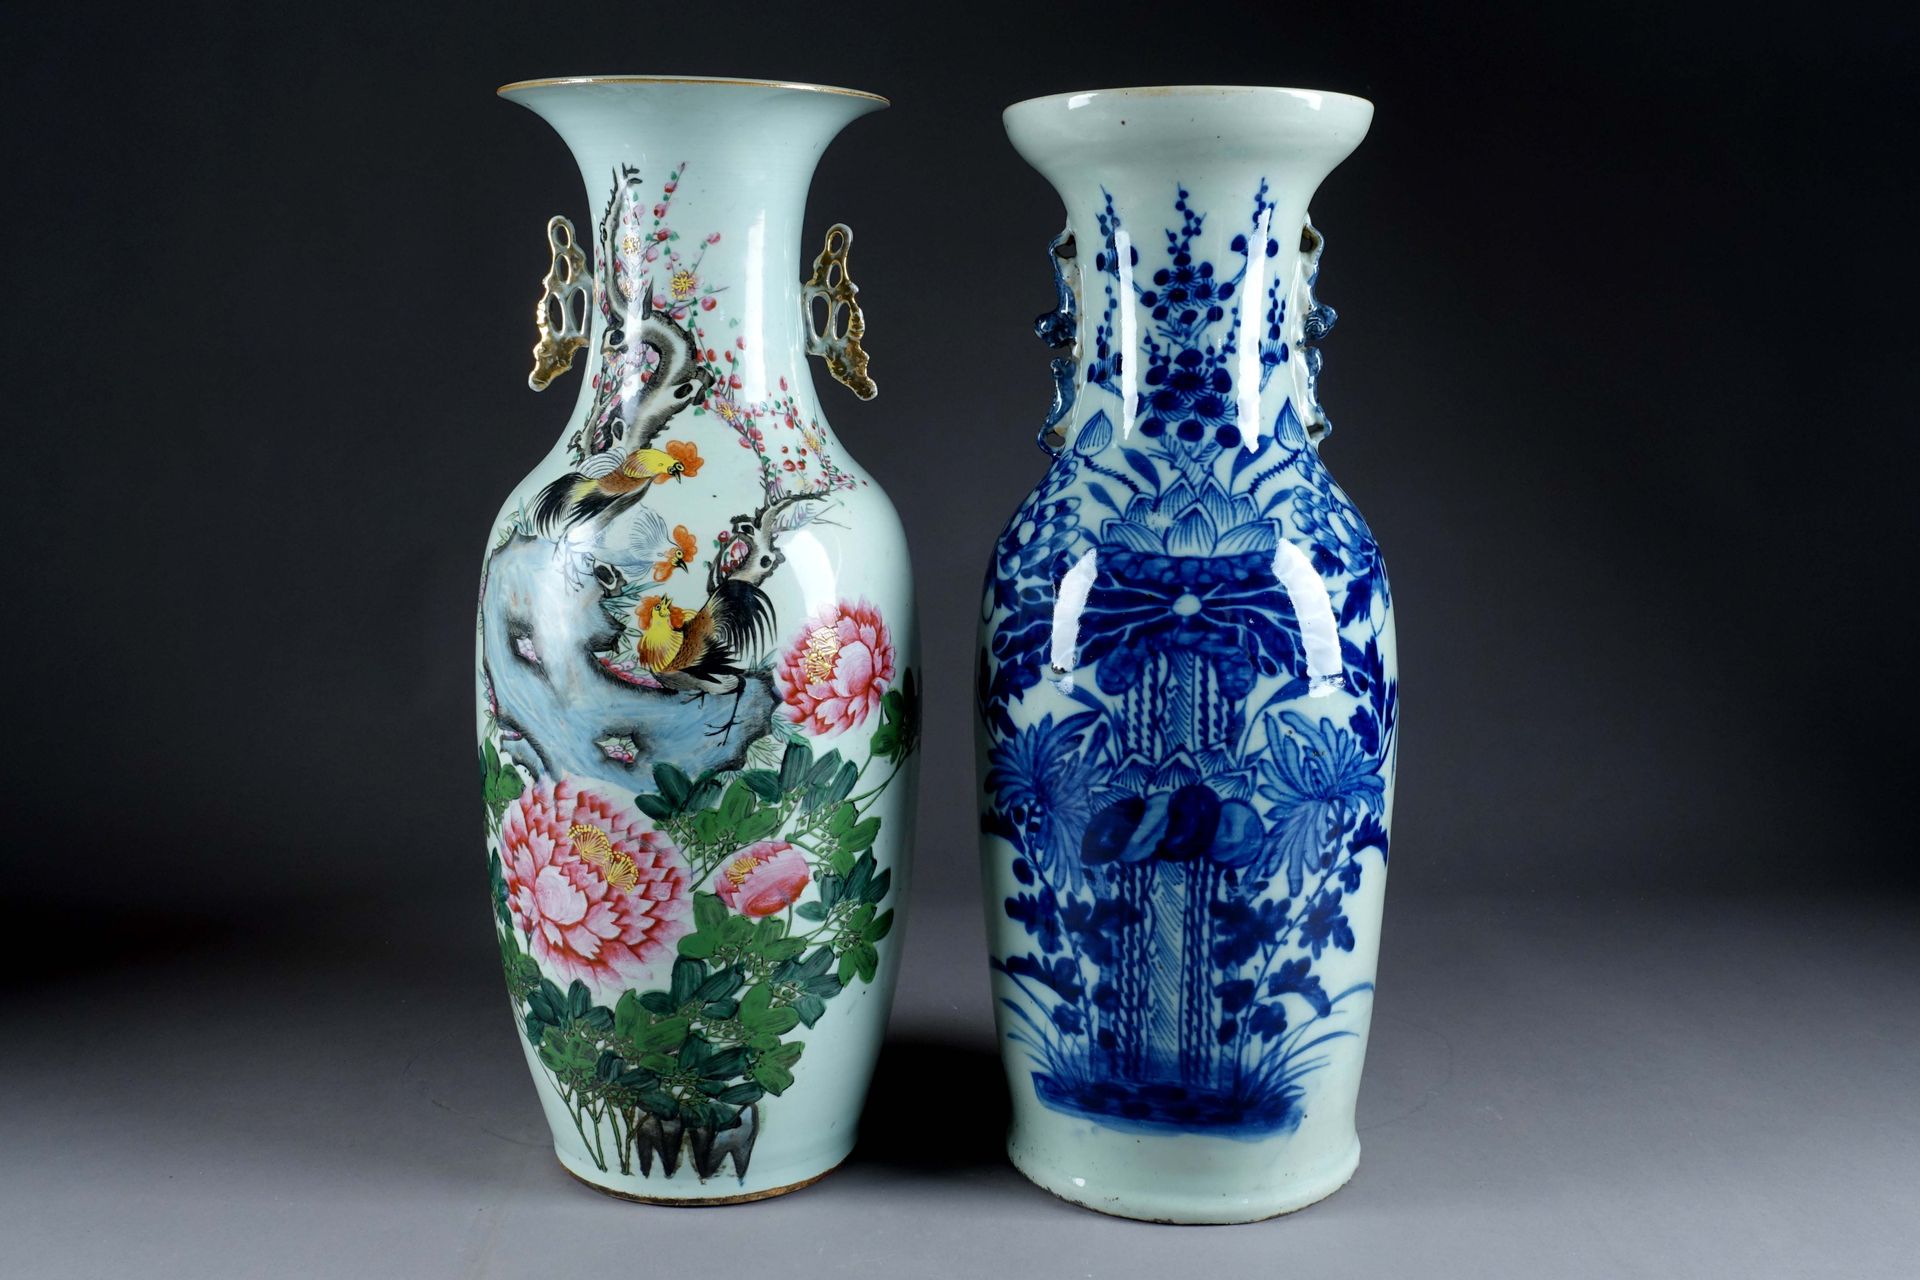 Chine du début du XXe siècle. Zwei große Vasen. Eine mit vegetabilem Dekor in bl&hellip;